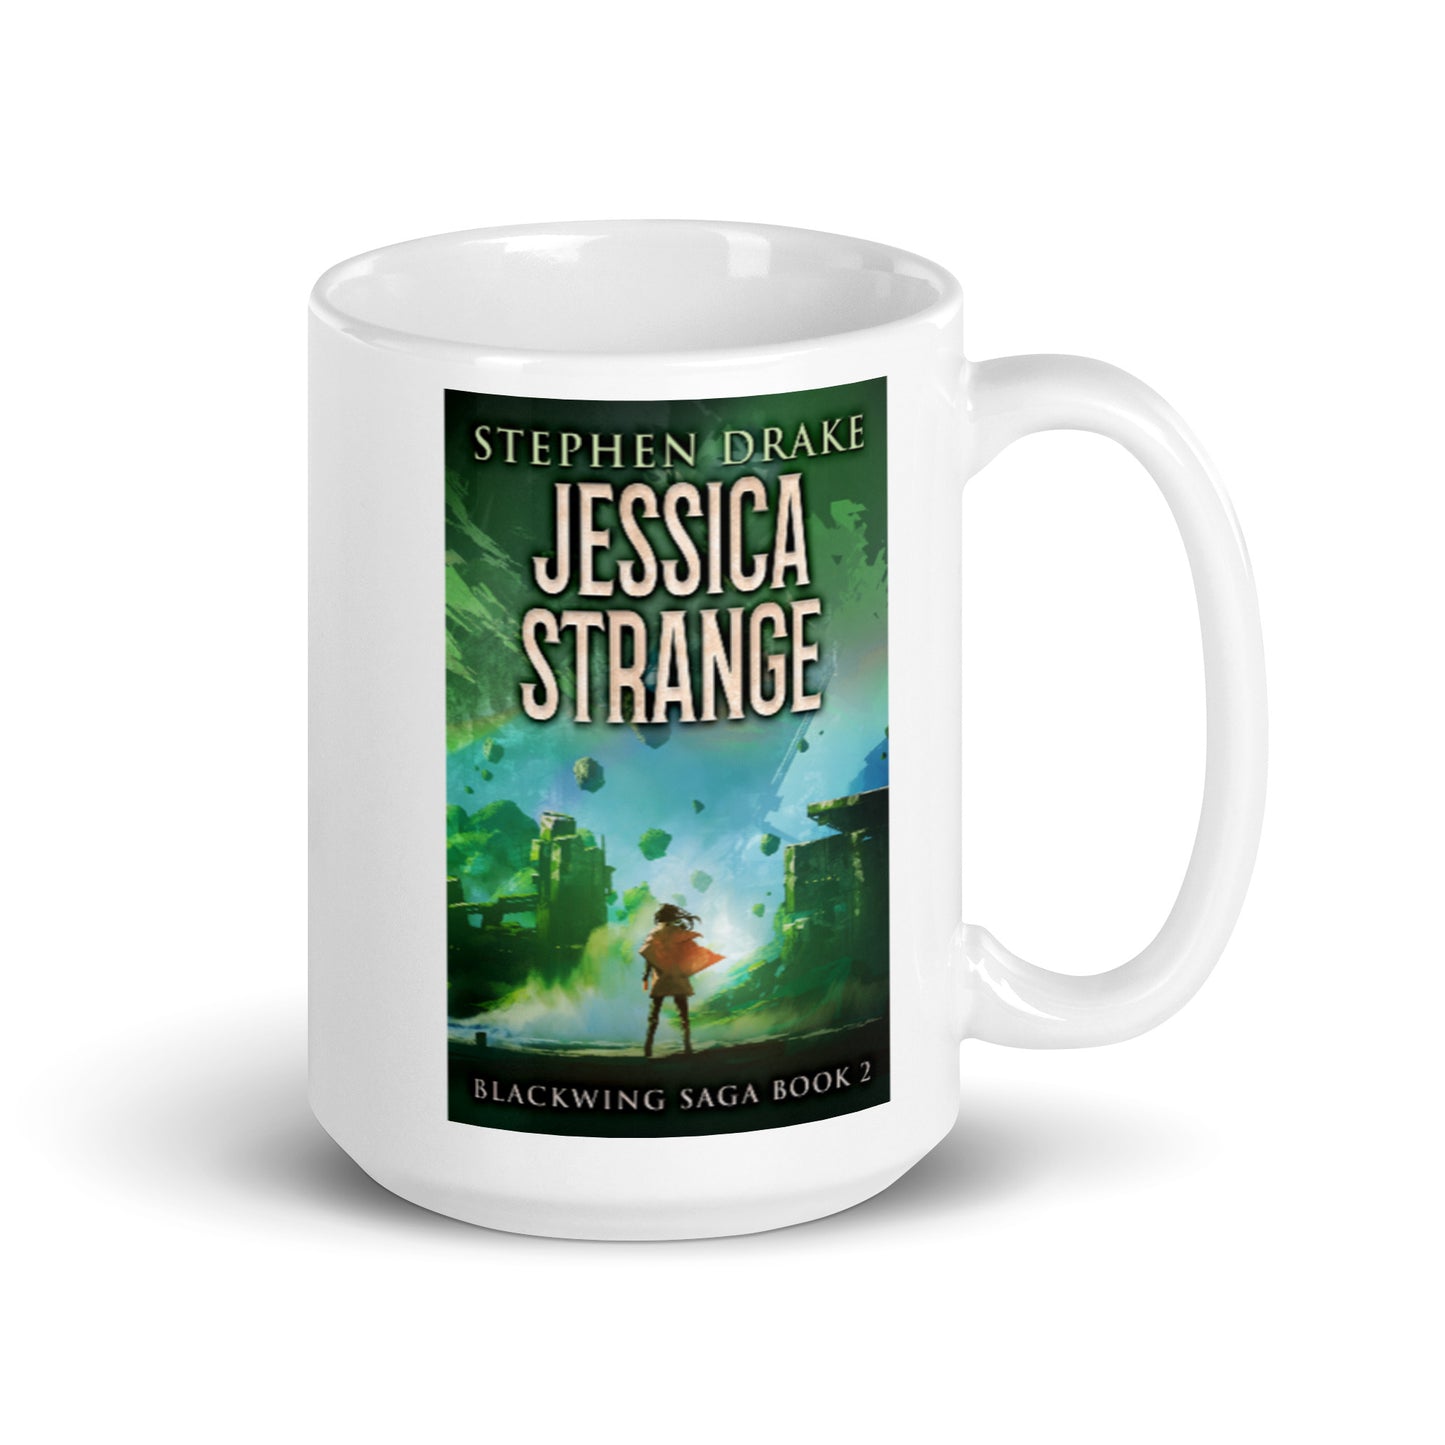 Jessica Strange - White Coffee Mug